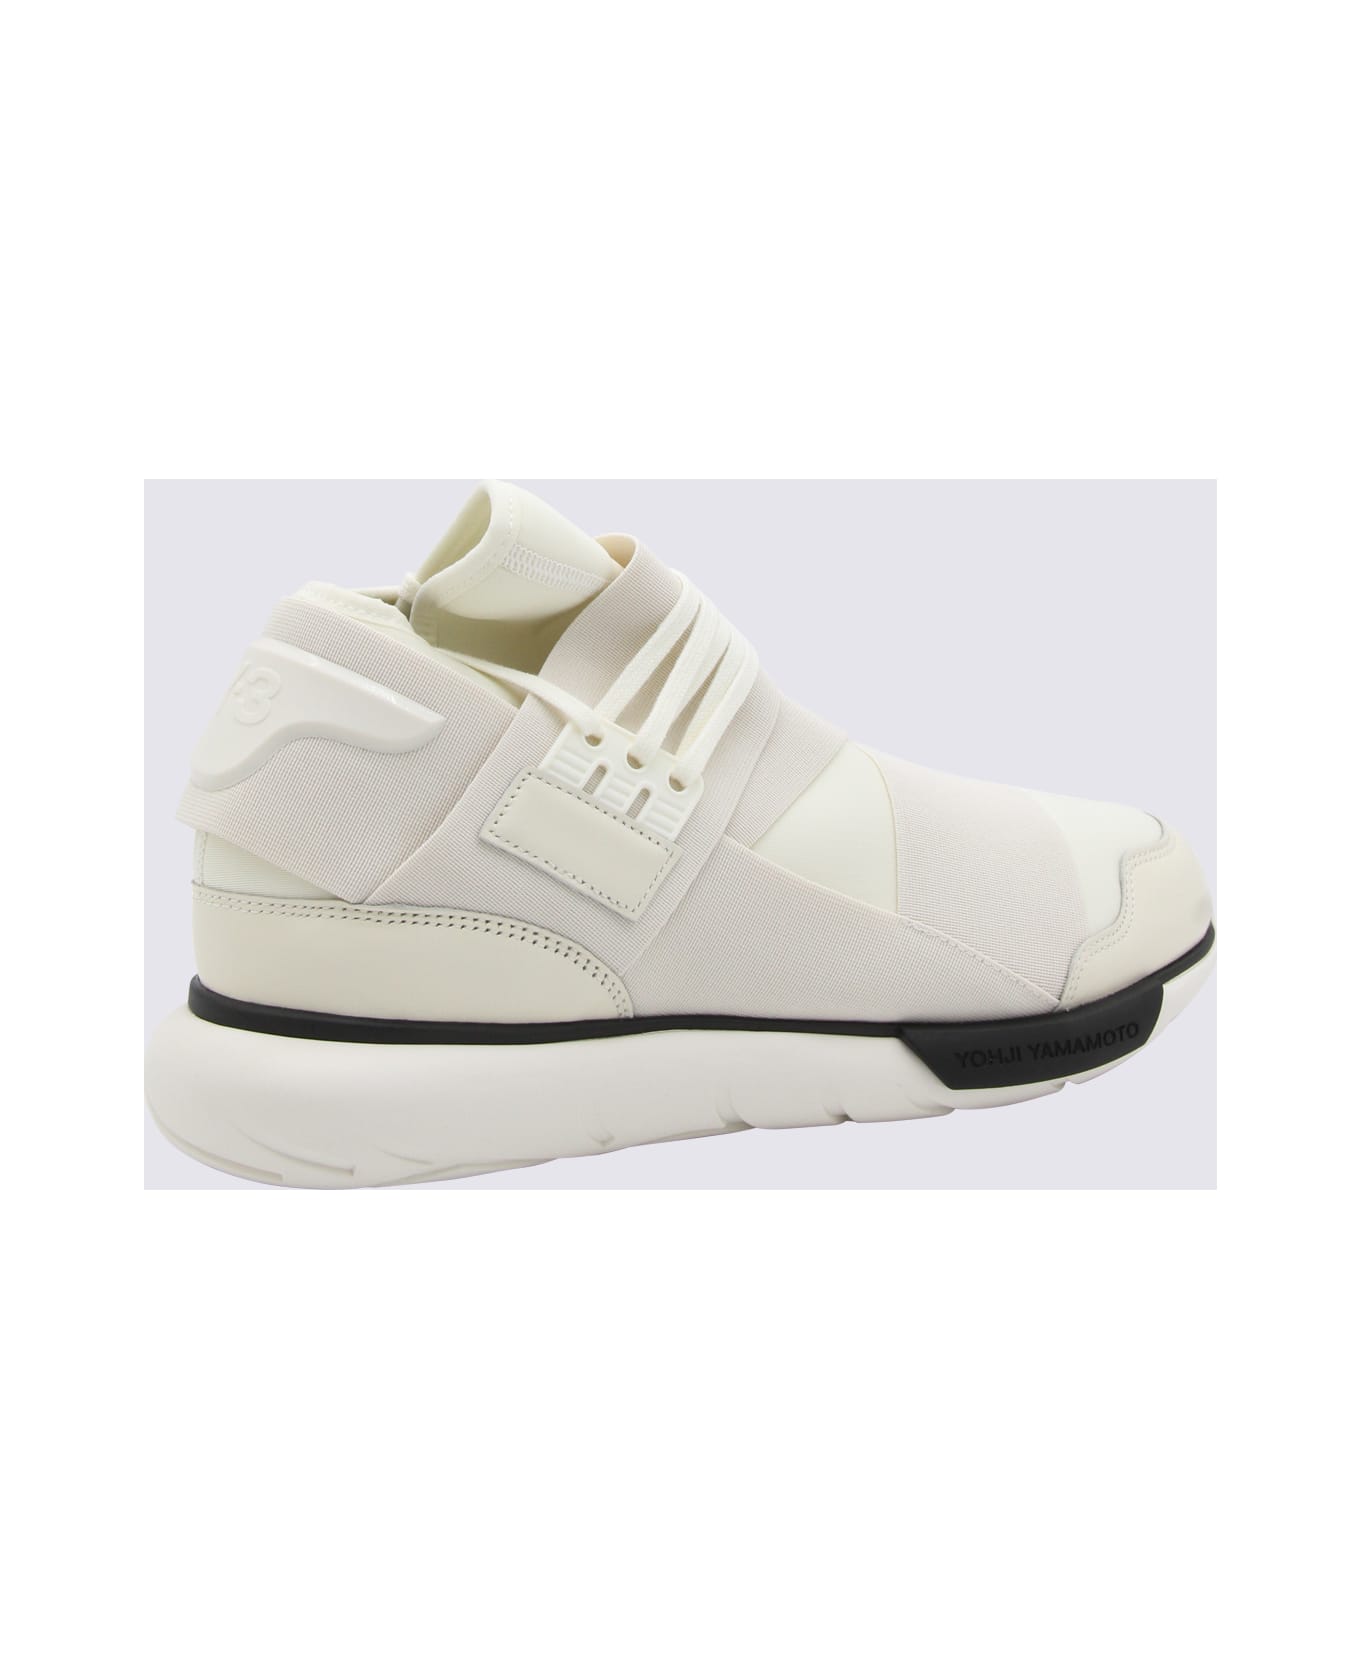 Y-3 White Canvas Sneakers - OFFWHITECREAMWHITEBLACK スニーカー